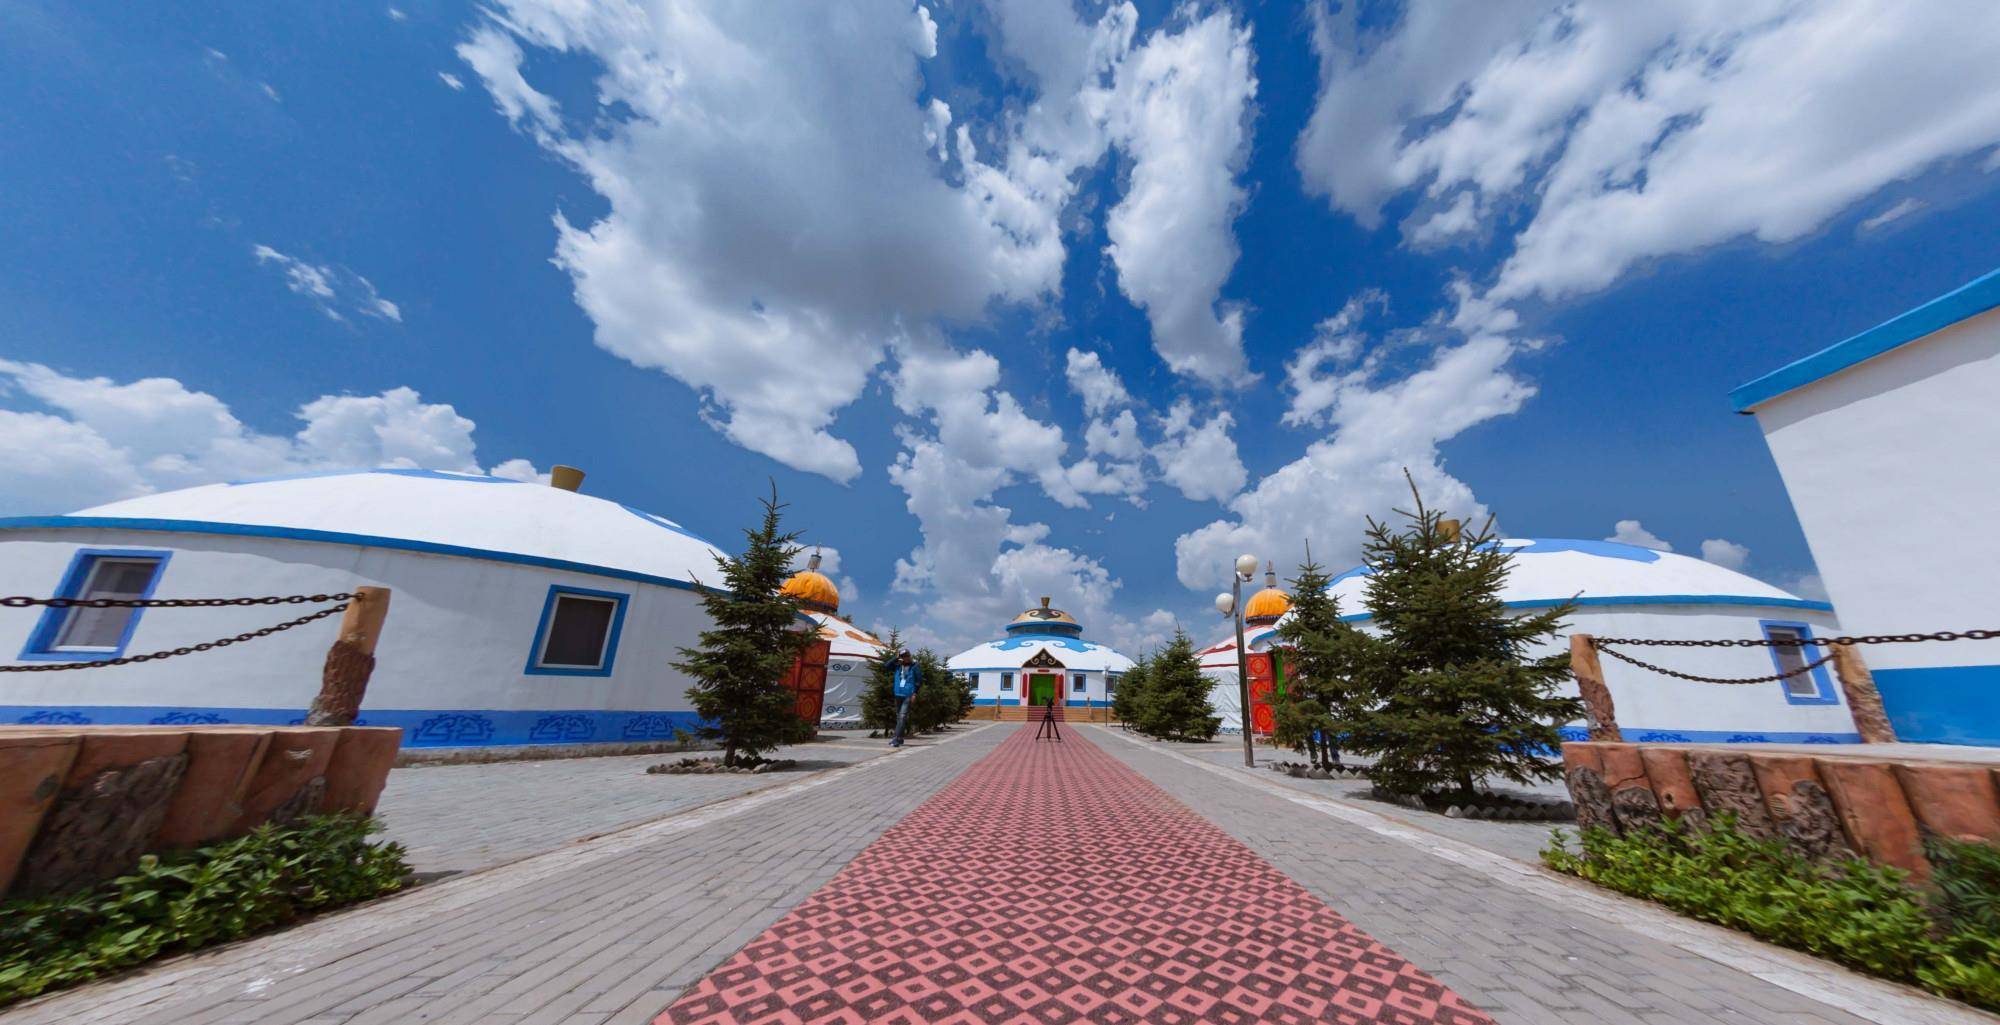 内蒙古通辽这条沟,名气虽不大,但风景不错,是休闲旅游的好去处